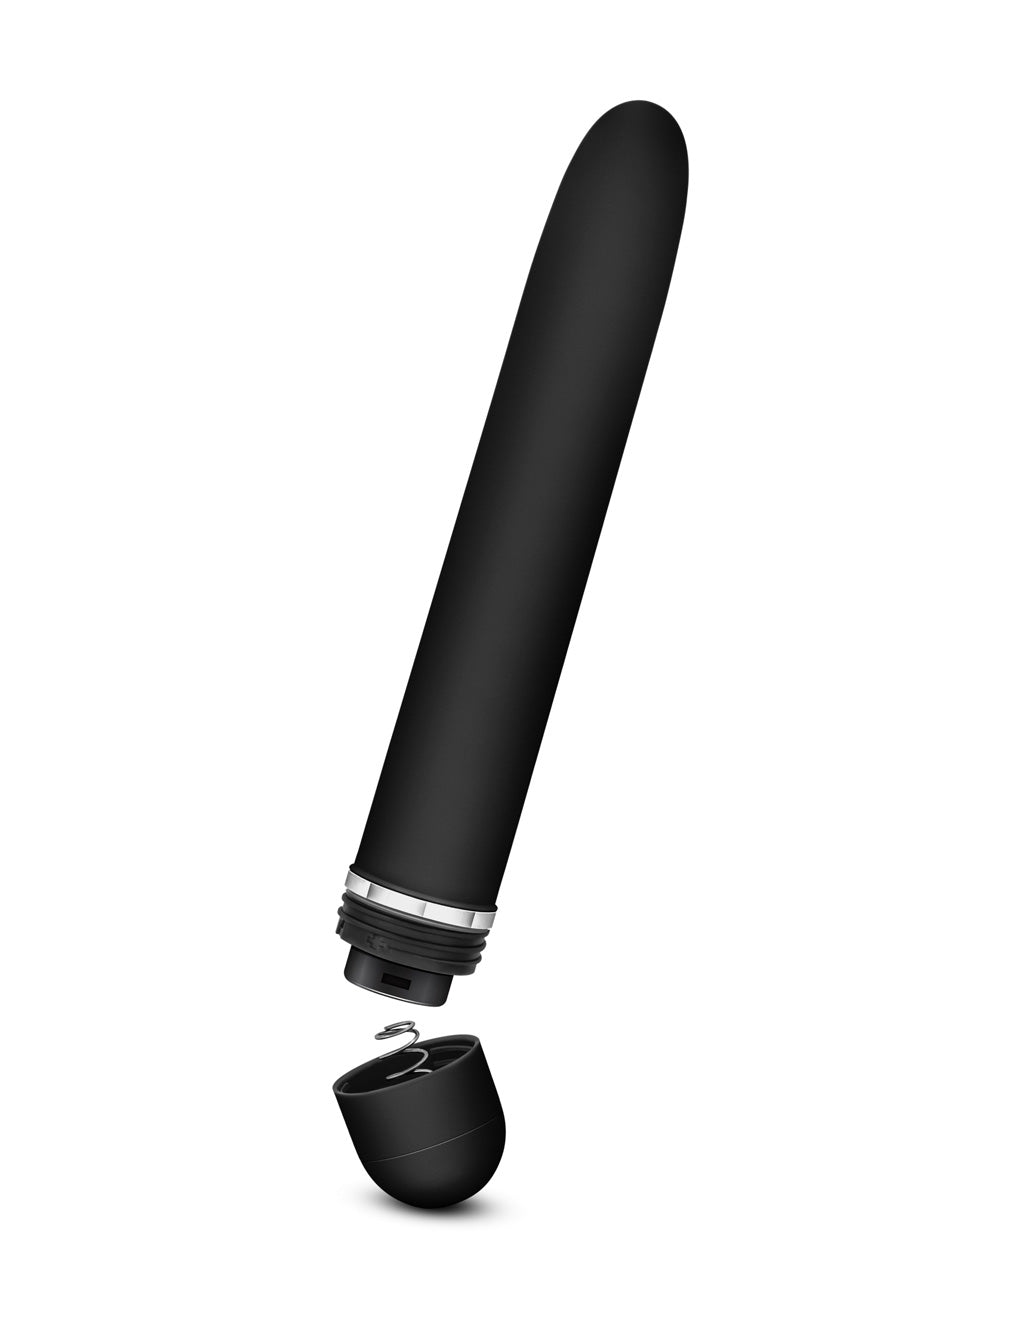 Rose Luxuriate Vibrator- Black- Battery